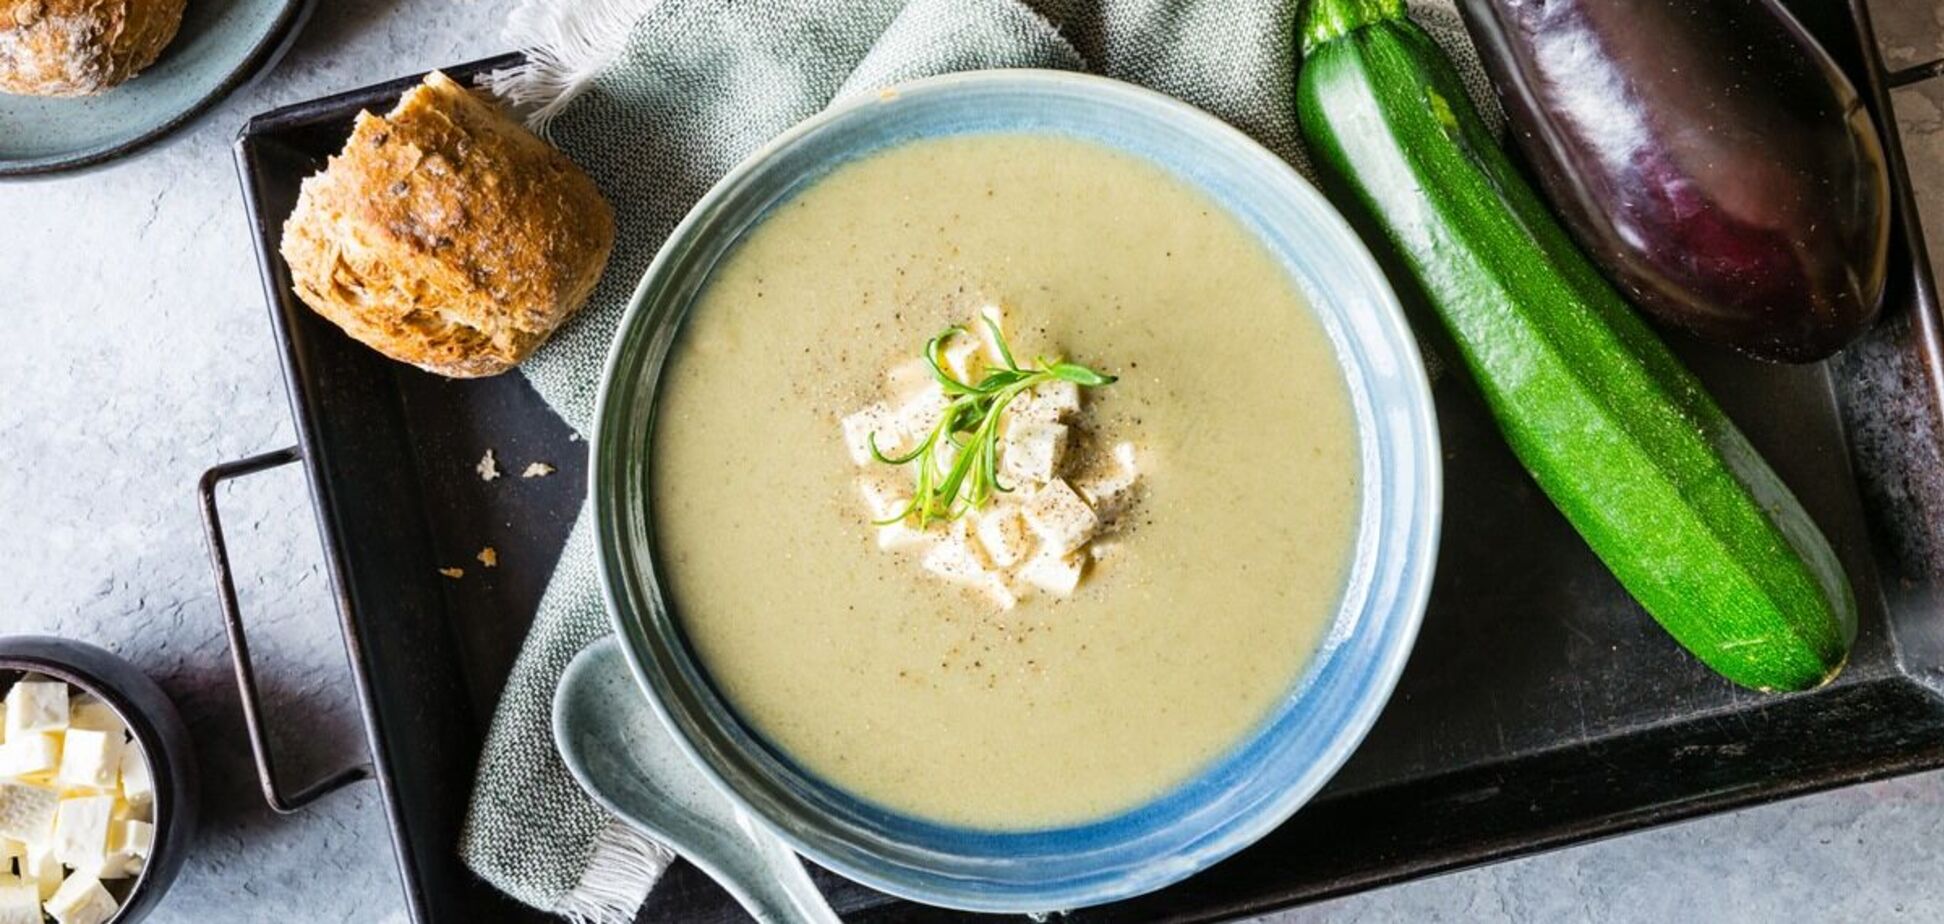 Крем-суп из баклажанов как в ресторане: рецепт вкусного и изысканного блюда